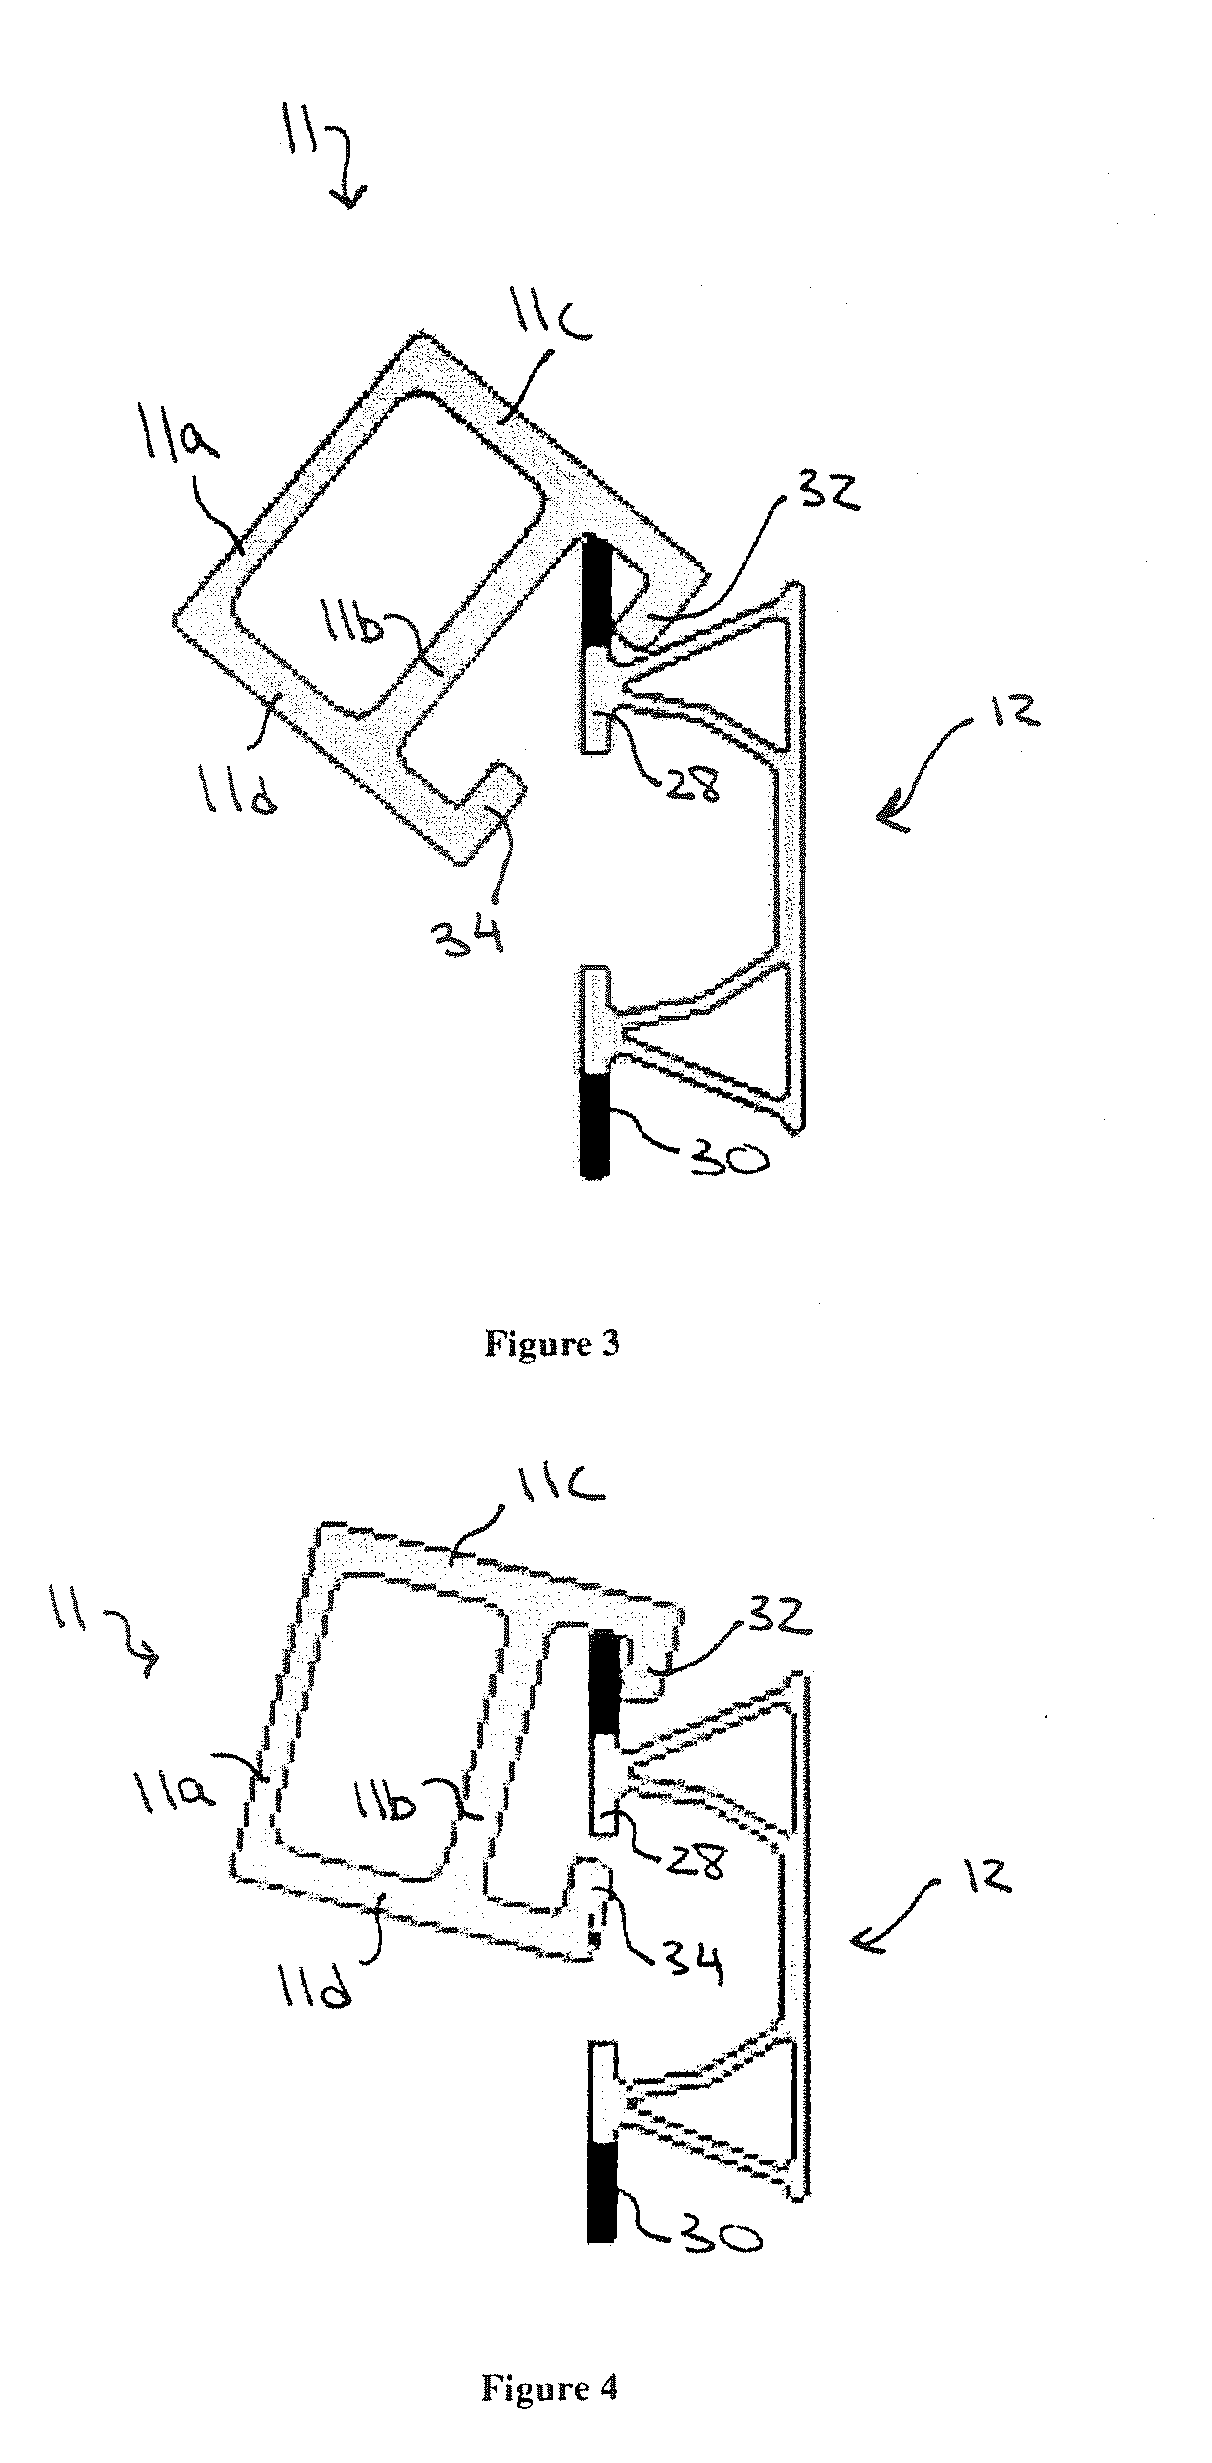 Rail attachment mount